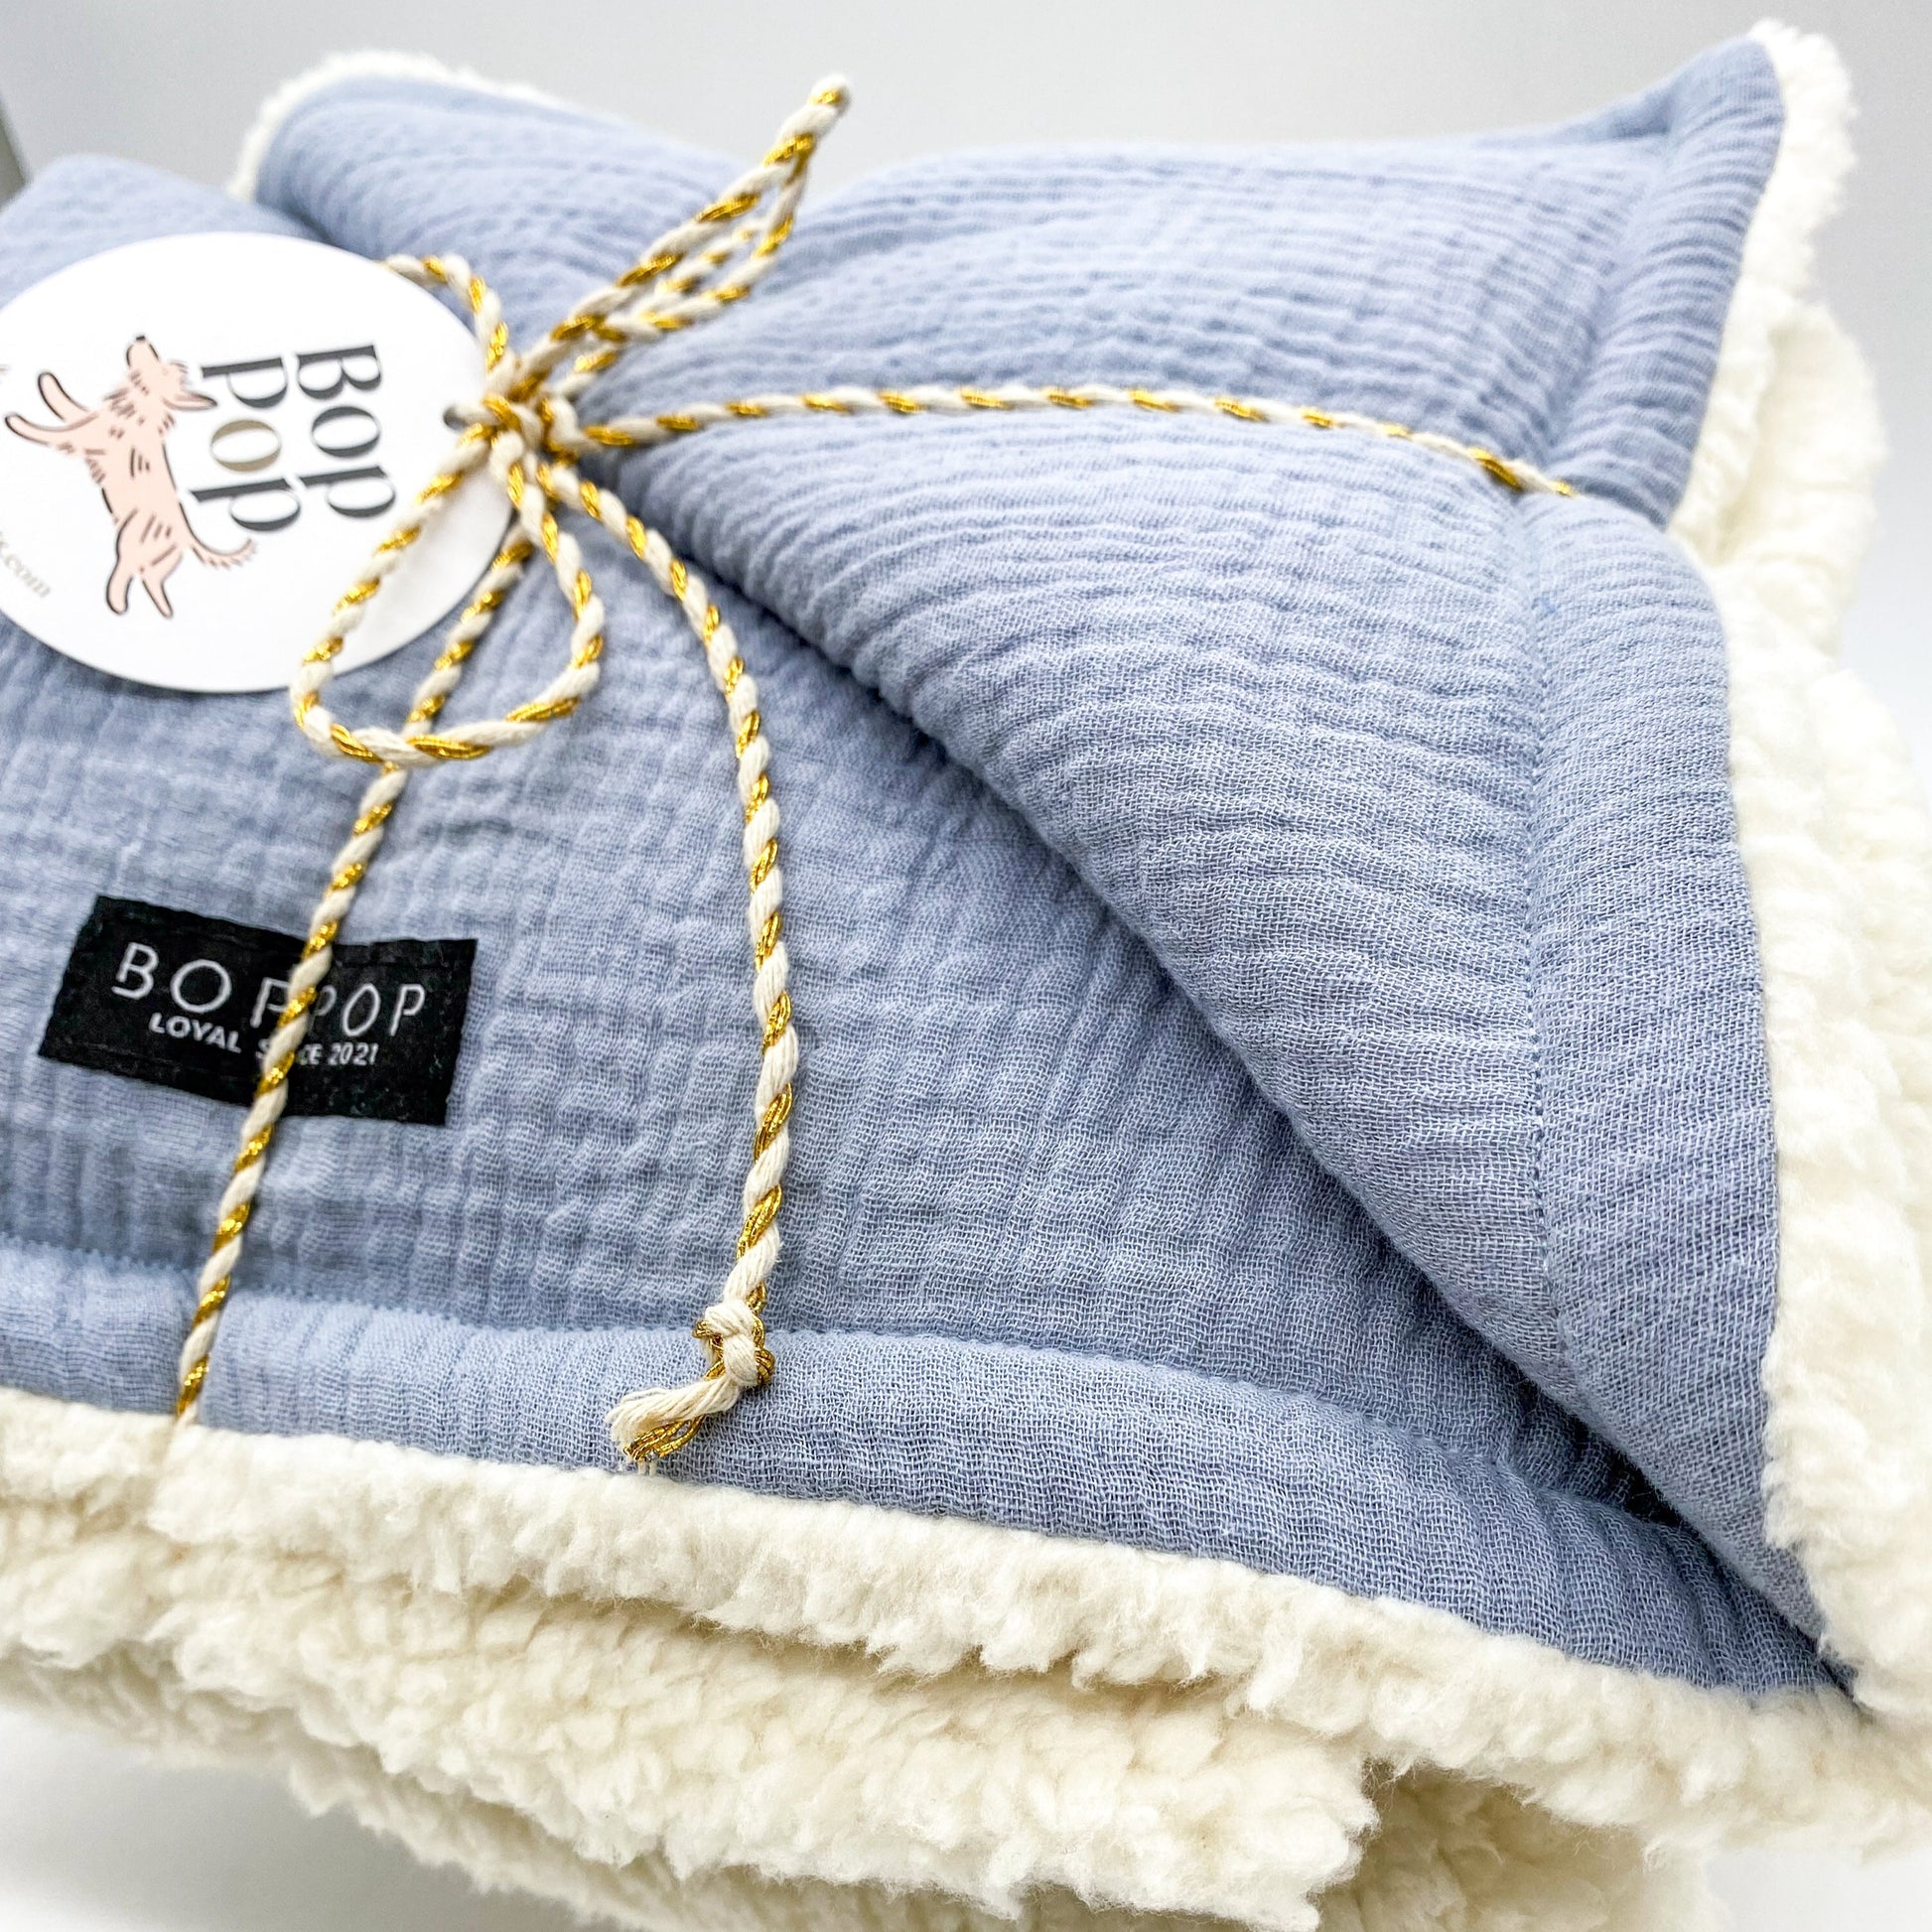 Blue Cream Off white sherpa pet blanket cozy warm winter fall season pet mini blanket bop pop pets